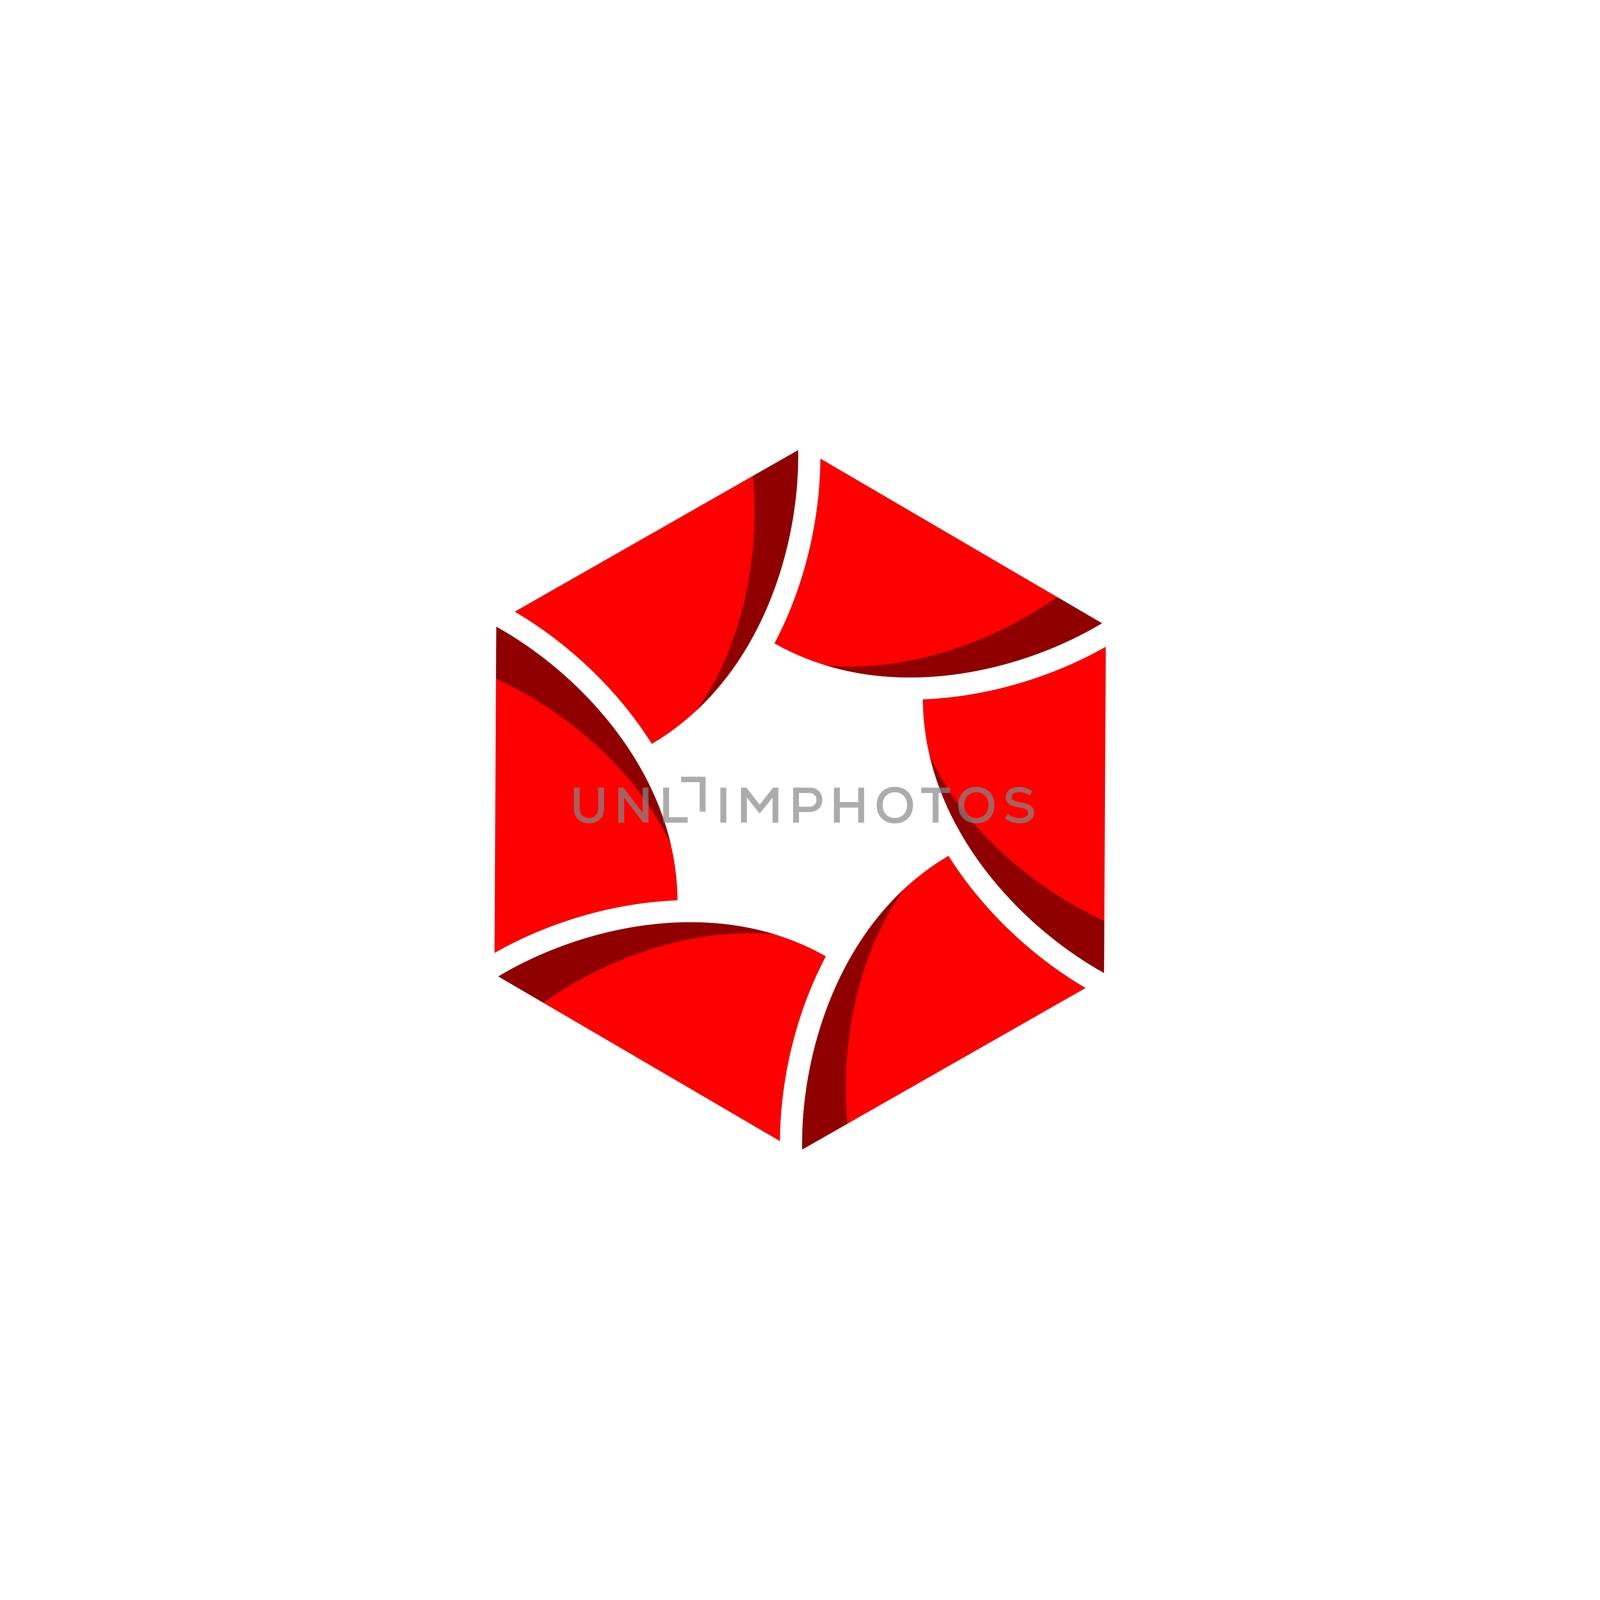 Hexagon Lens Photography Logo Template Illustration Design. Vector EPS 10.